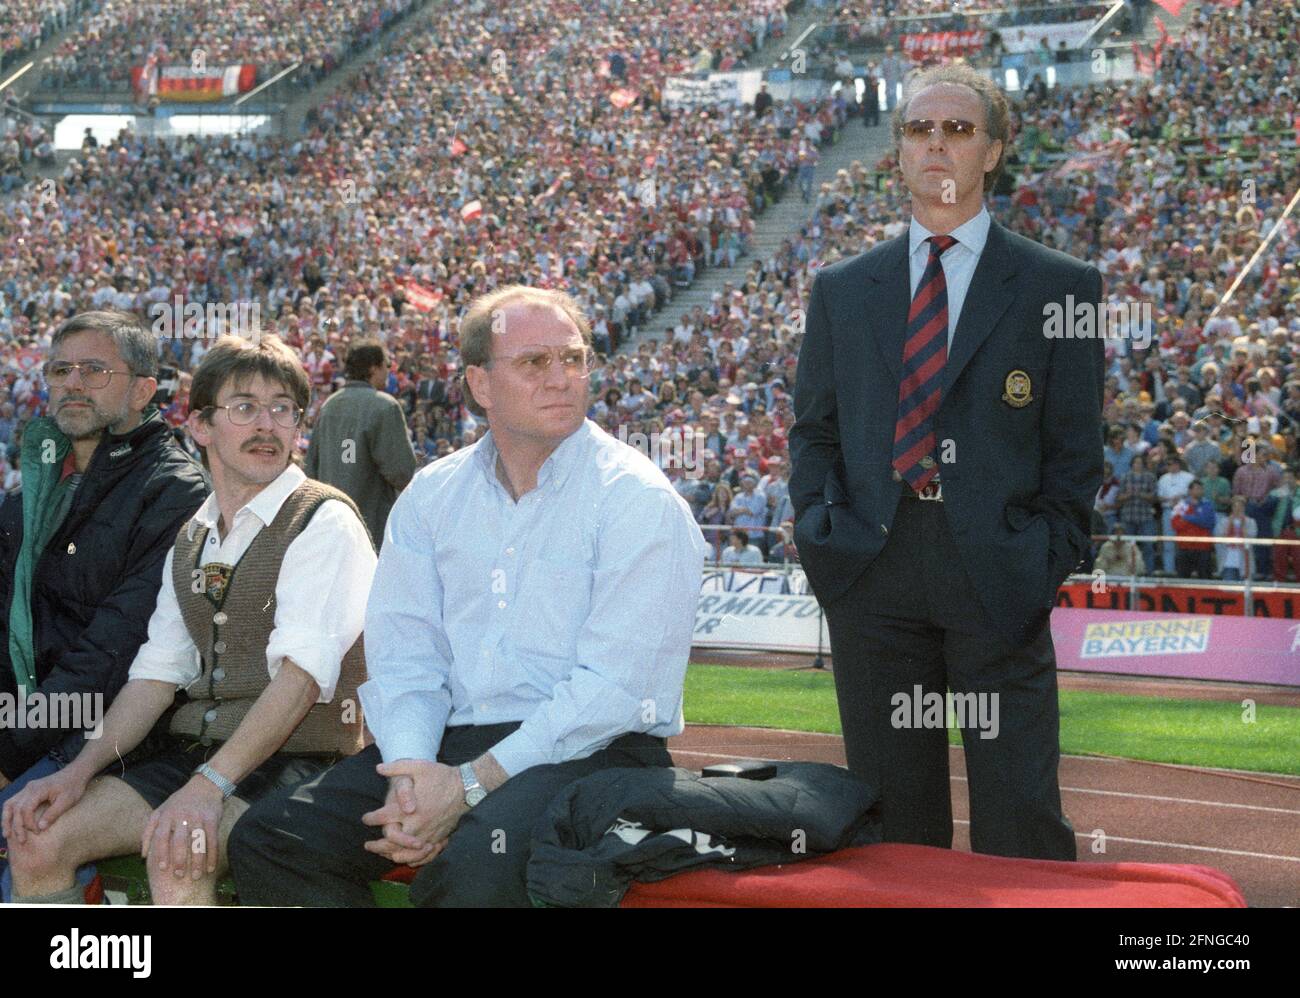 FC Bayern München - FC Schalke 04 2:0/07.05.1994. L'entraîneur Franz Beckenbauer (FC Bayern München/debout) à côté de: Manager Uli Hoeneß. [traduction automatique] Banque D'Images